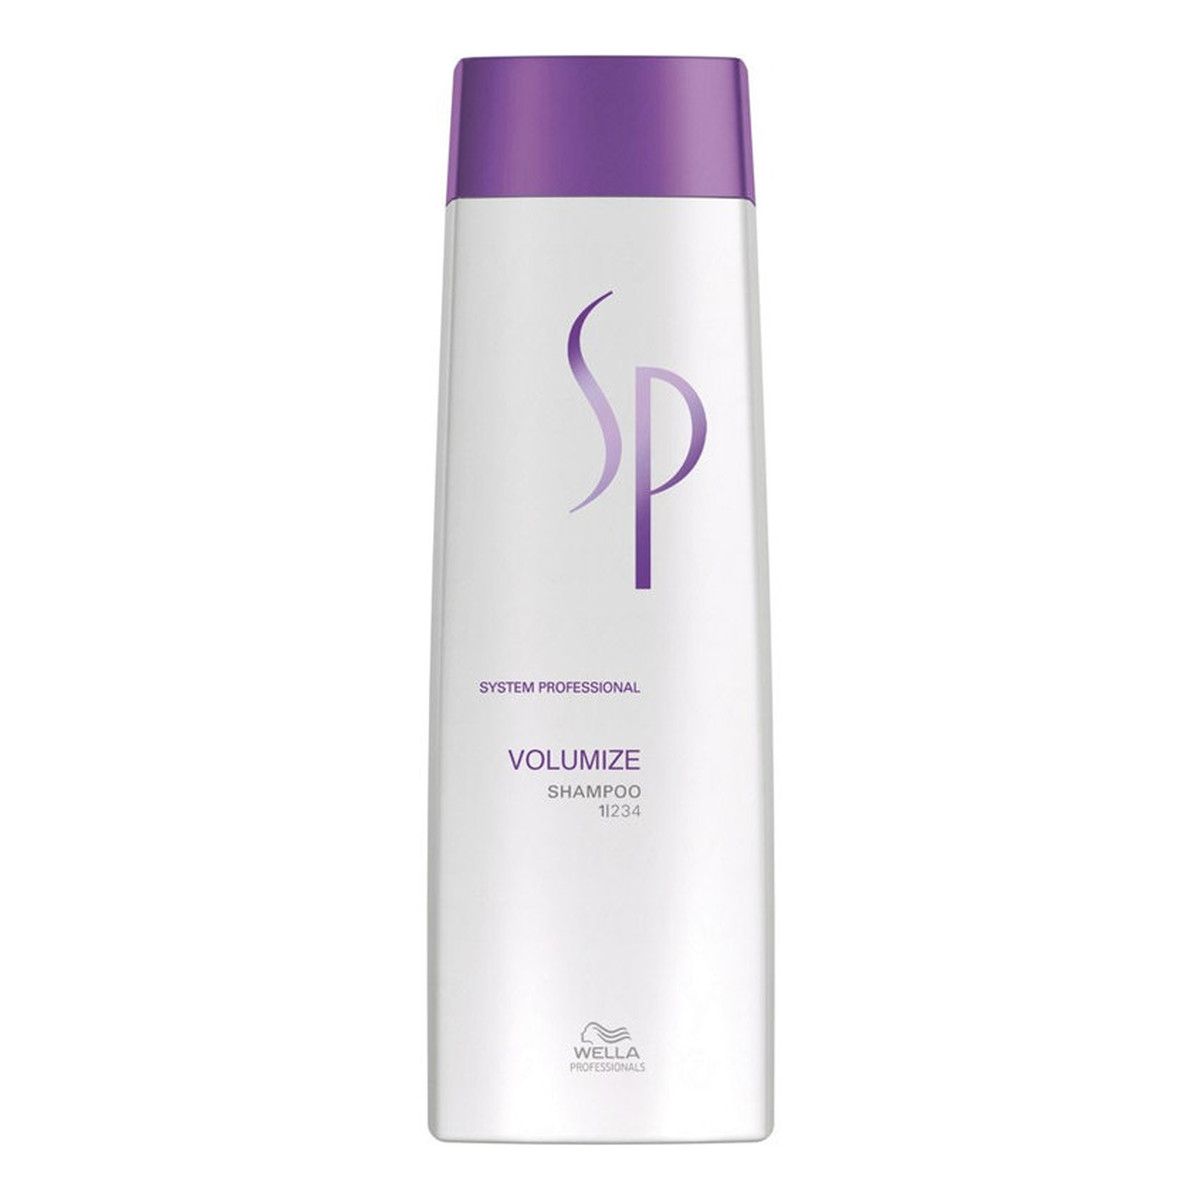 Wella Professionals SP Volumize Shampoo szampon nadający objętość włosom cienkim i delikatnym 250ml